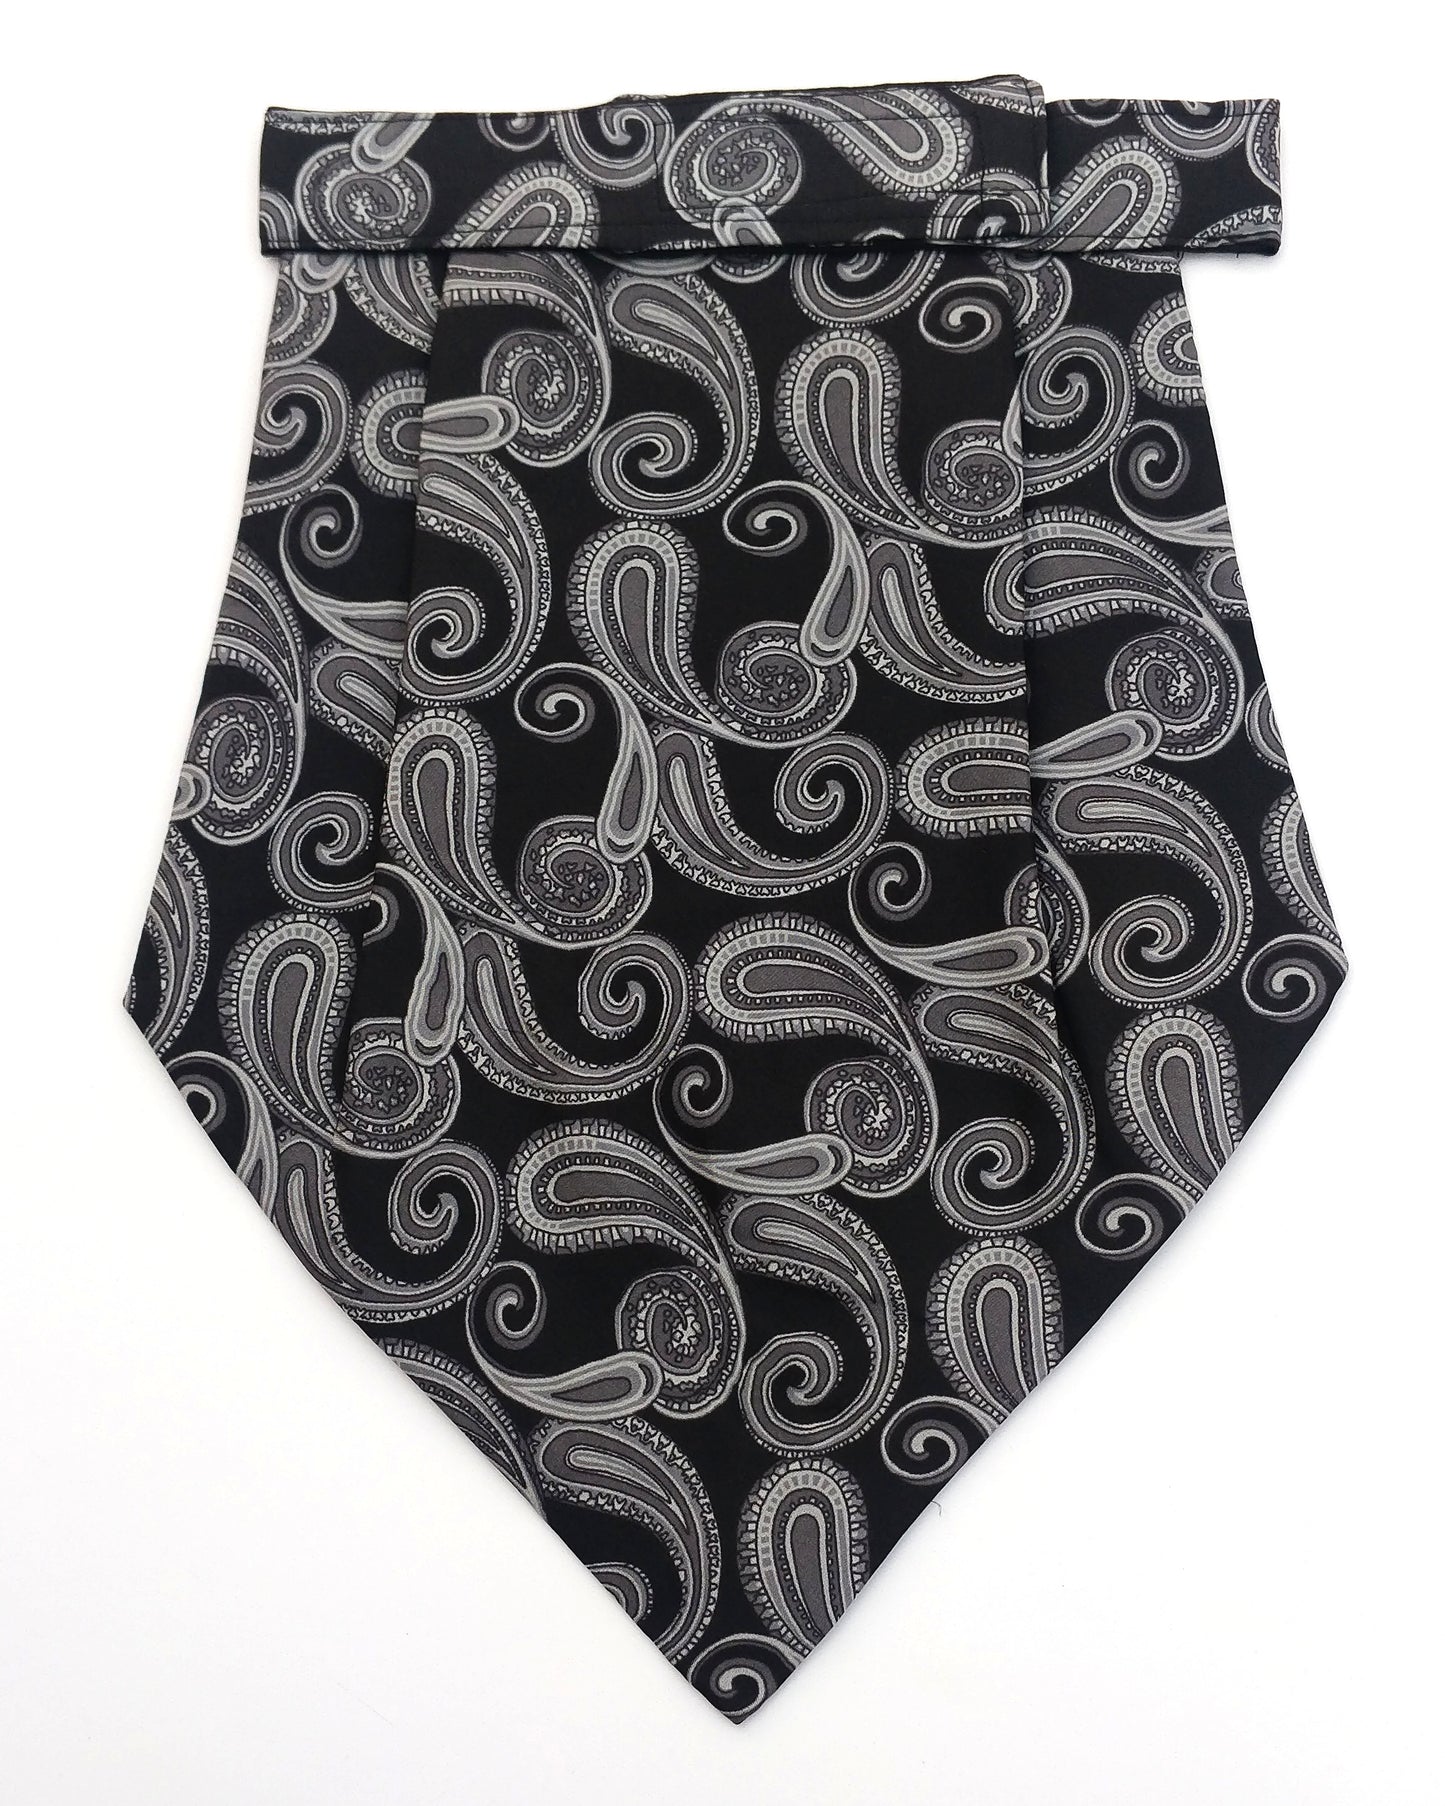 Silk Cravat Black & White Paisley